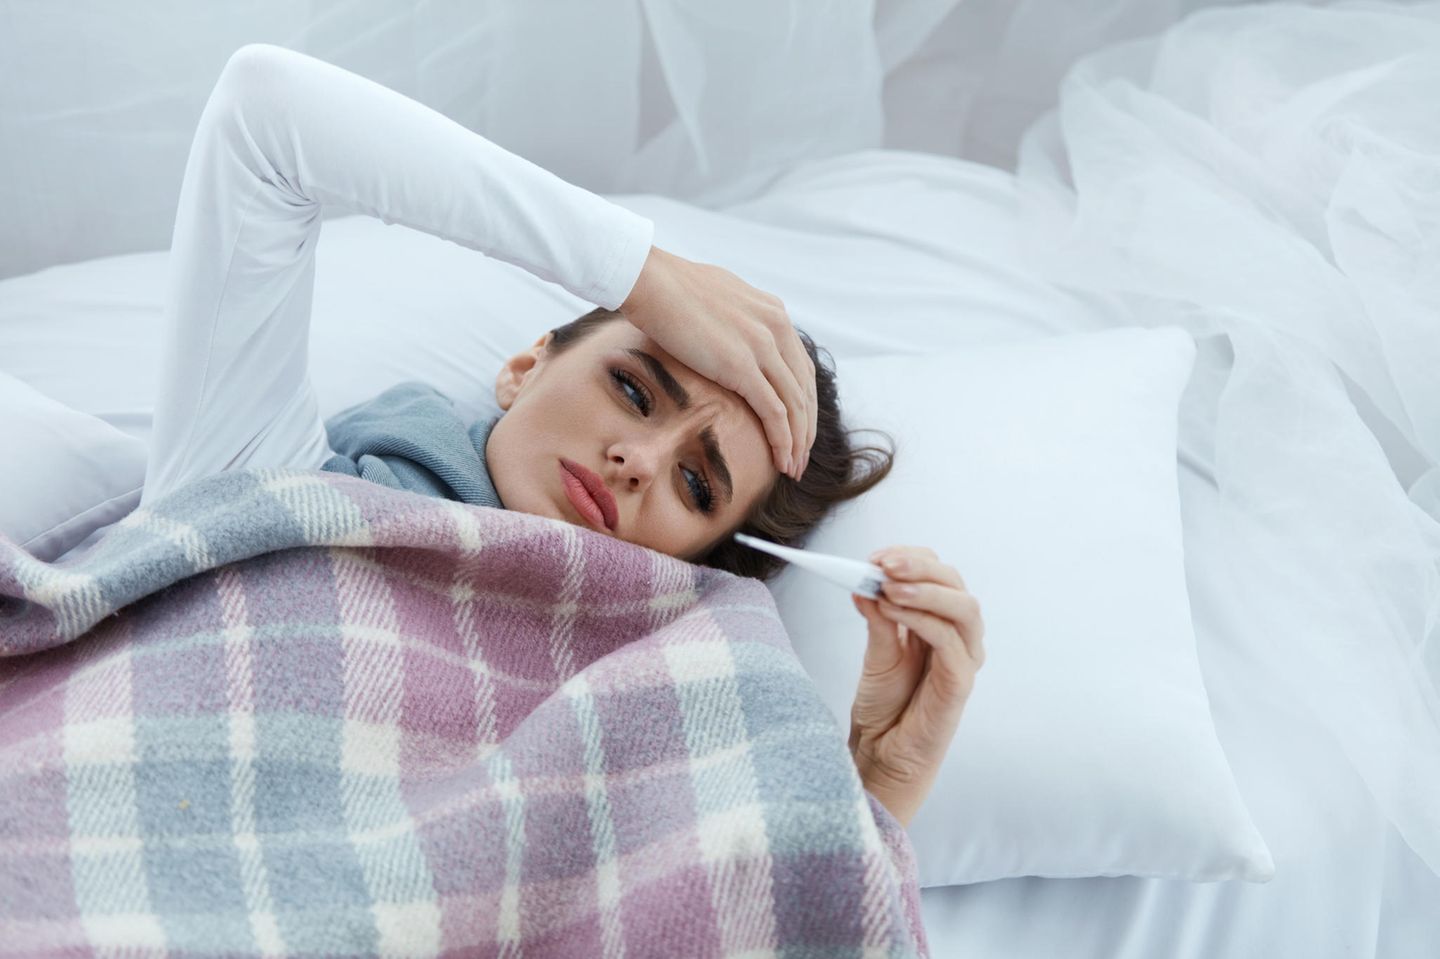 Frau mit Fieber im Bett (Symbolbild)